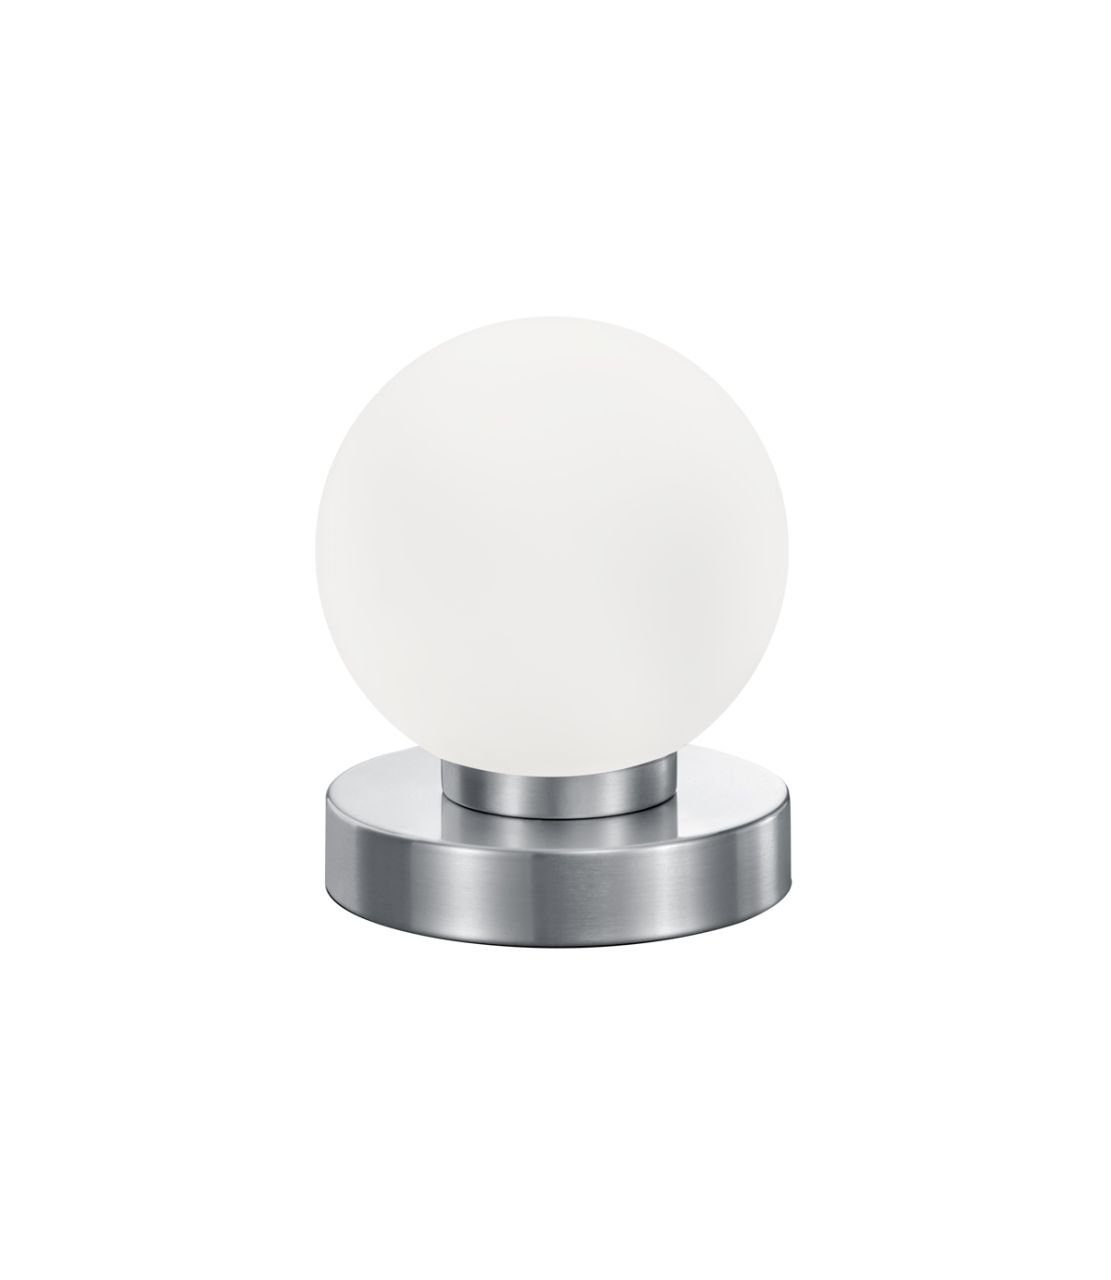 Reality Leuchten Tischleuchte PRESTON, 1-flammig, Weiß, Glasschirm, H 15  cm, ohne Leuchtmittel, Metallgestell Nickelfarben matt, Tischlampe,  Touchfunktion, Farbe: nickel-matt, weiß